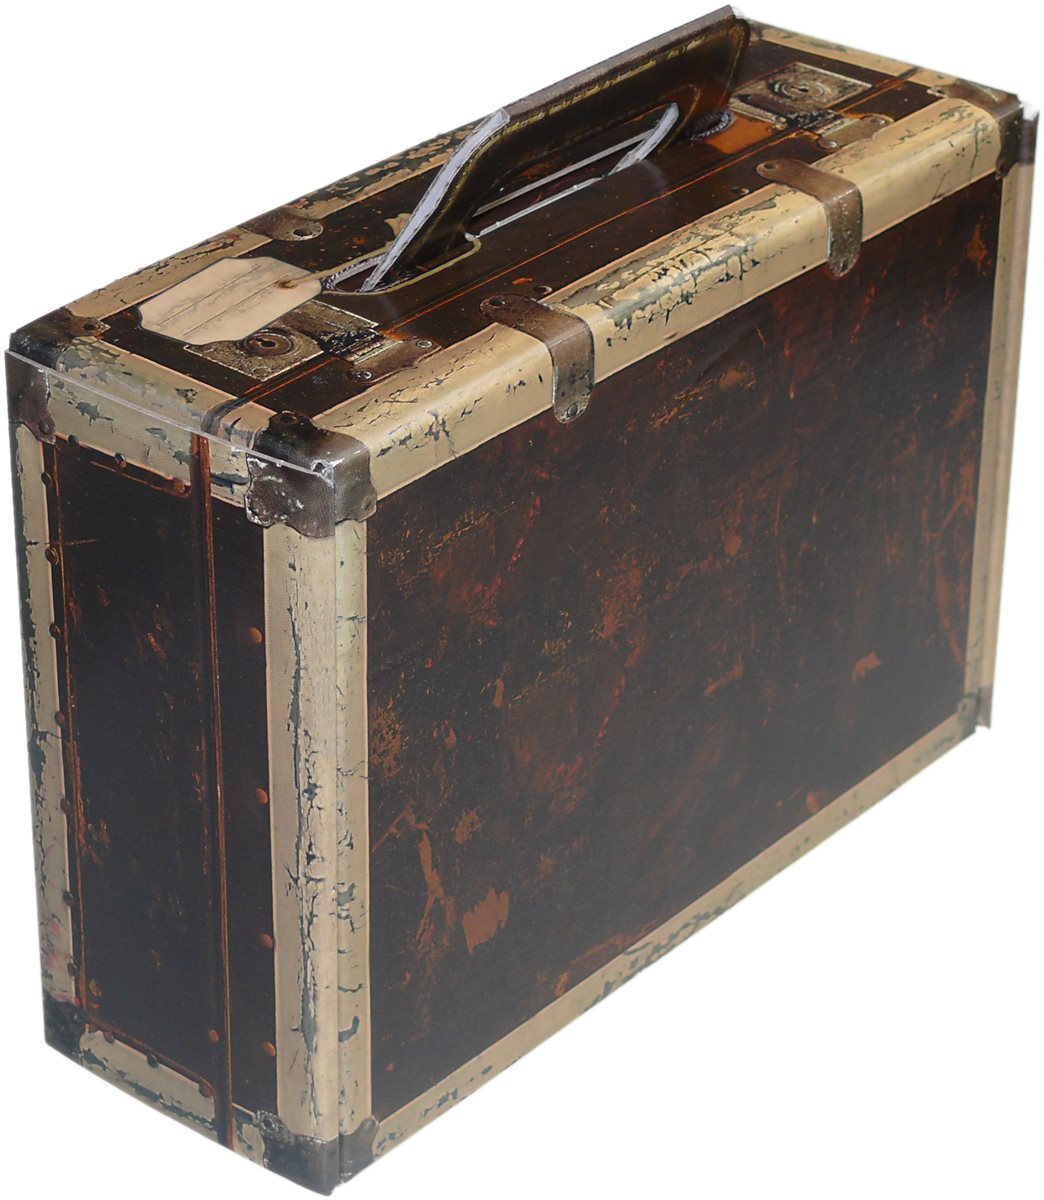 kleiner Trage Karton "Koffer" in Holzoptik - WK 1er - Weinkoffer Weinkarton Box Truhe Verpackung Geschenke
